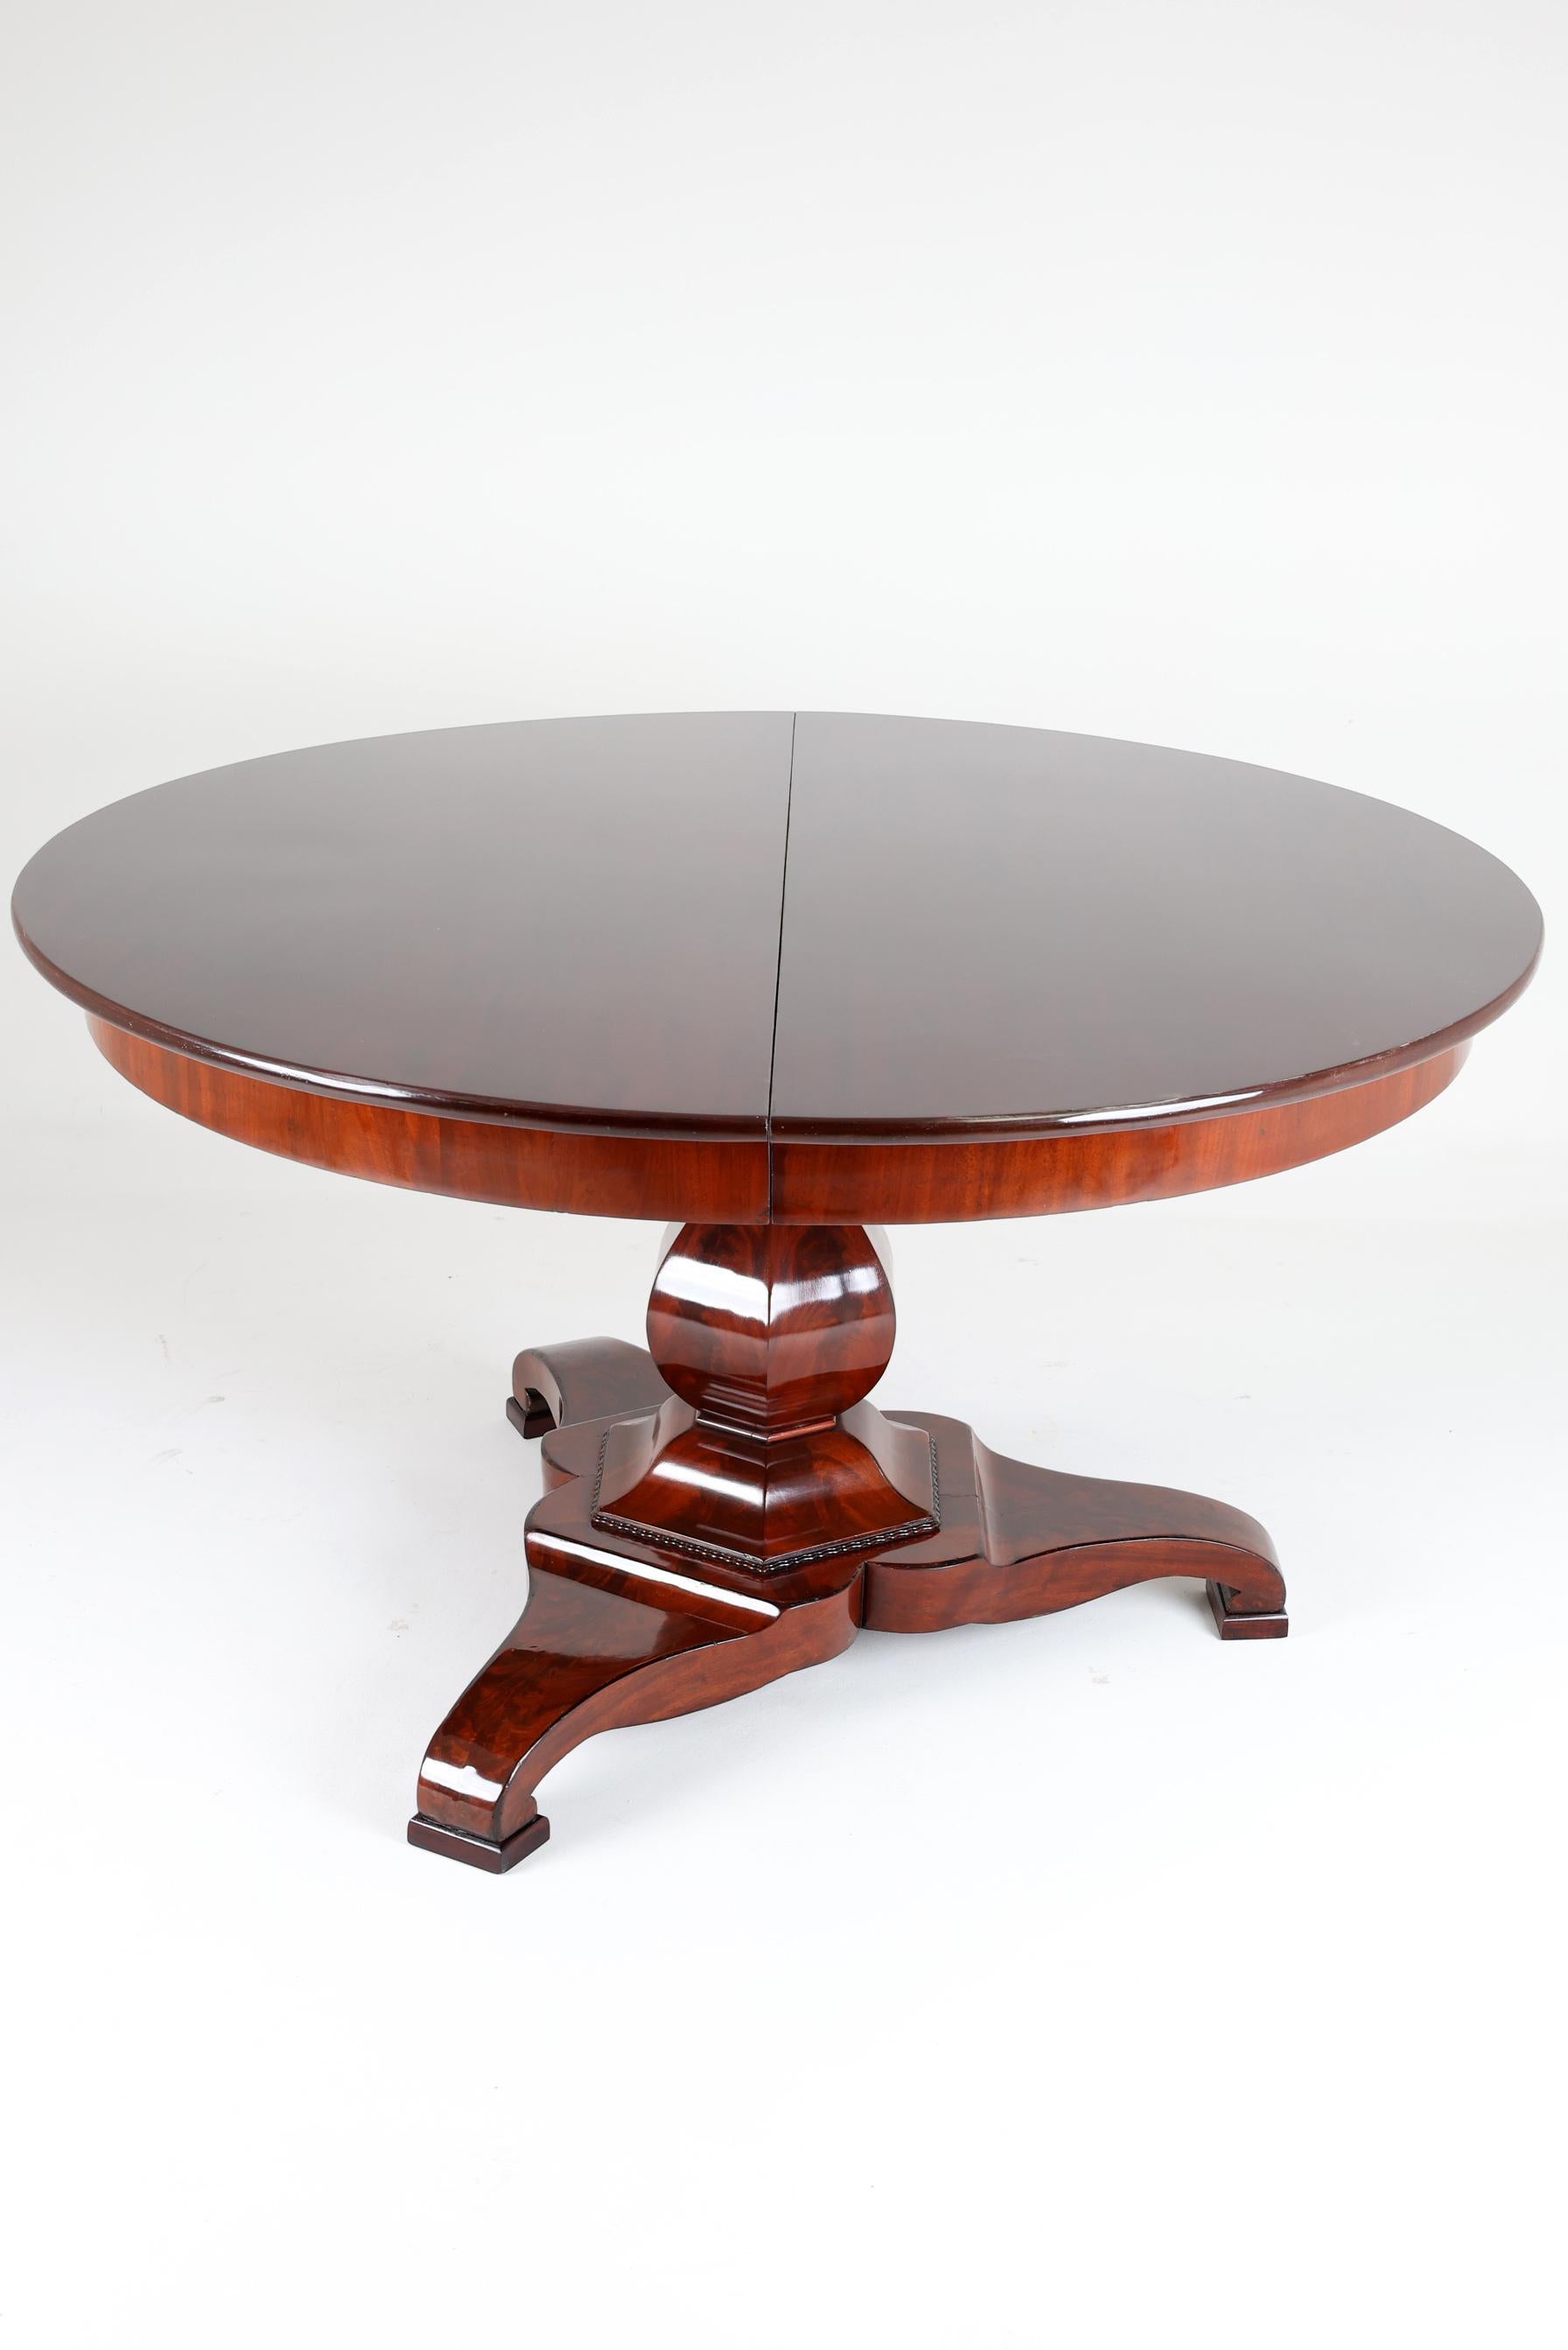 Mahagoni-Esstisch des 19. Jahrhunderts, 173 Zoll lang
Nederland, 1830-1835

Spektakuläres Essen  Tisch, der von einem großen, mahagonifurnierten Mittelsockel getragen wird. Dieser runde Formtisch hat einen Durchmesser von 140cm,  reicht aus, um